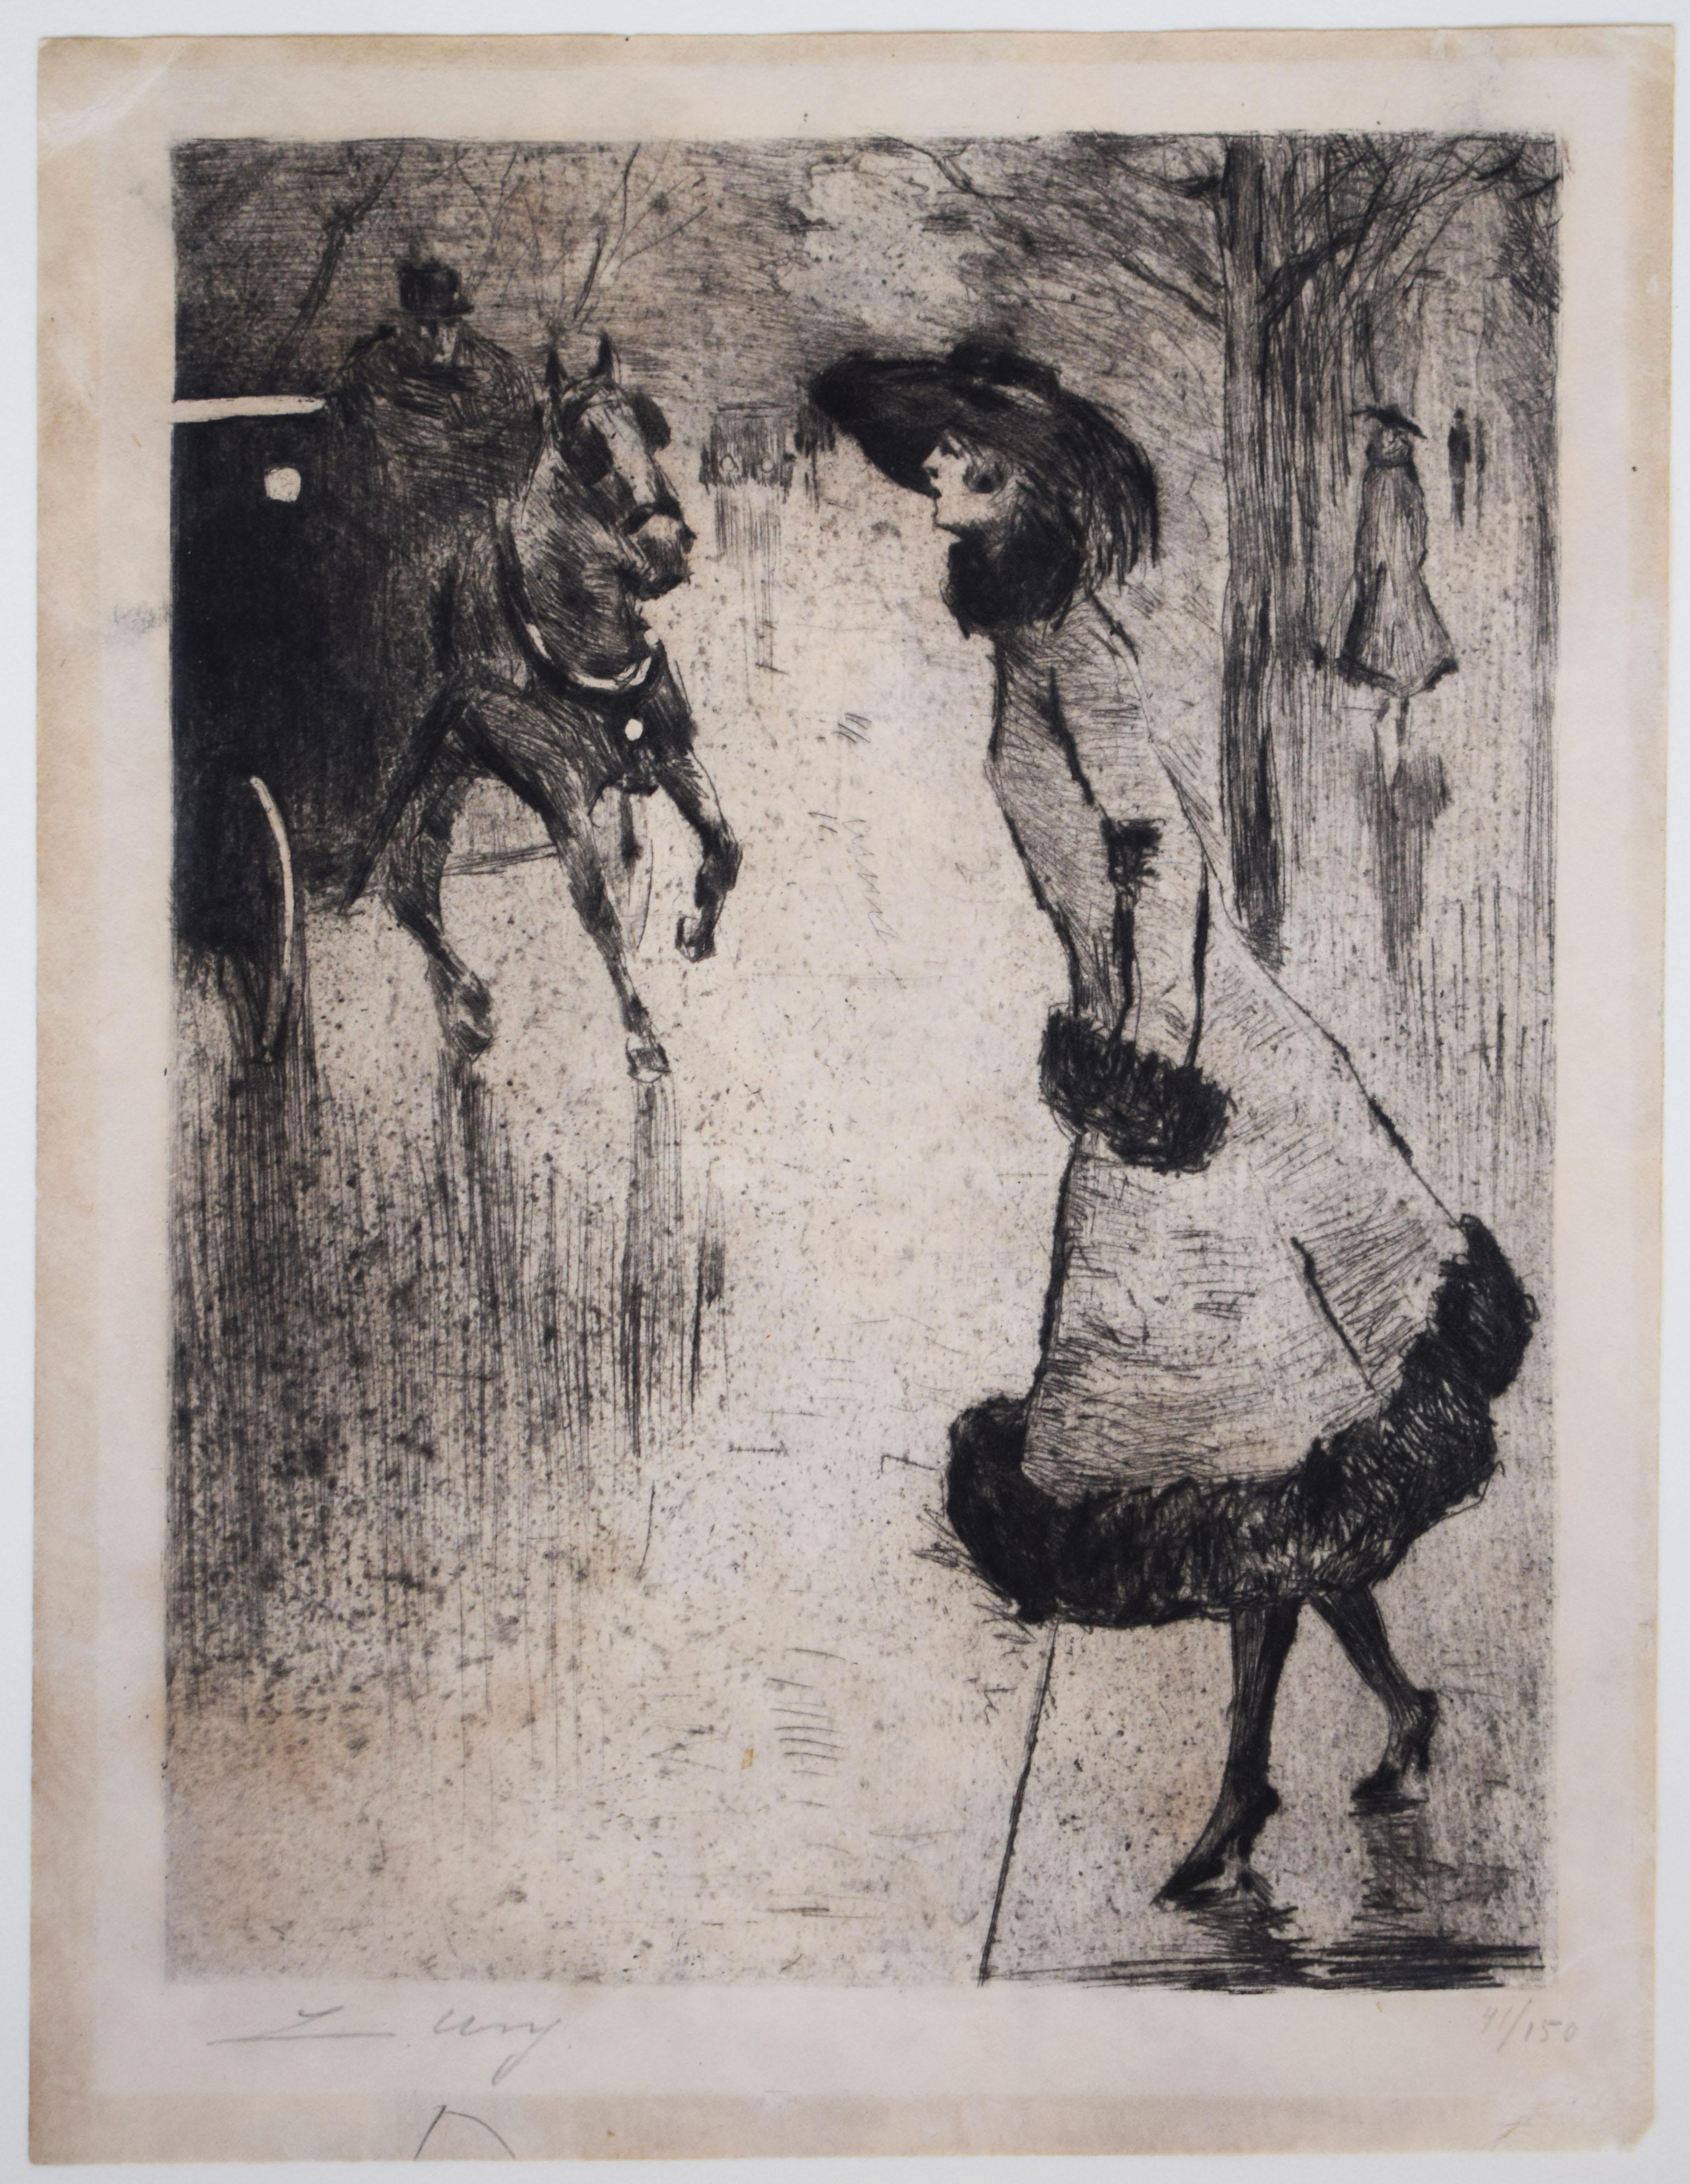 Dame, die eine Kutsche ruft  Dame, eine Droschkerufend – Deutscher Impressionismus – Print von Lesser Ury